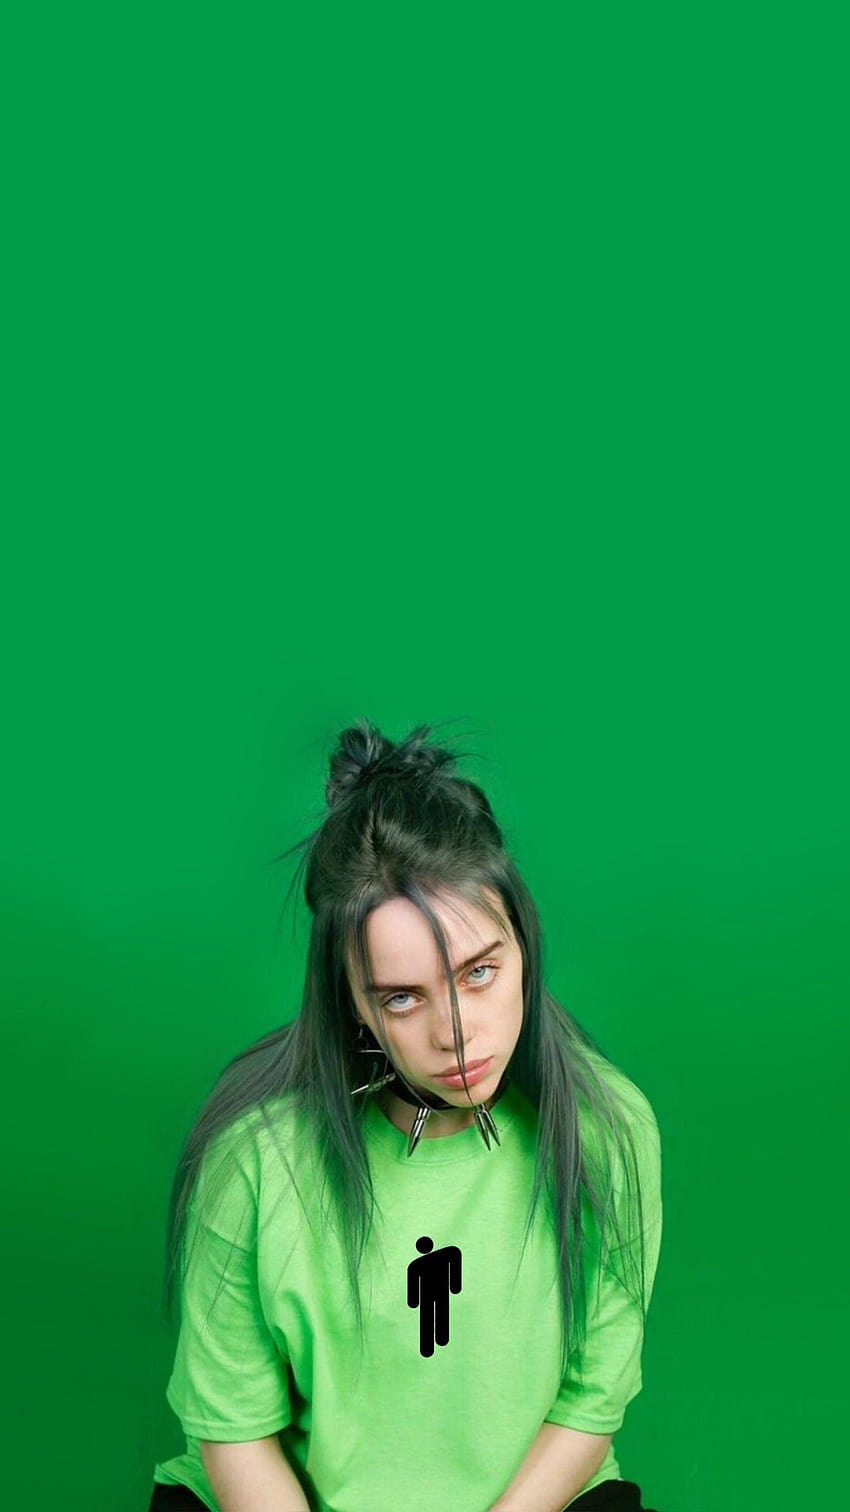 T A L I A di Billie eilish pada 2019, billie eilish hijau wallpaper ponsel HD